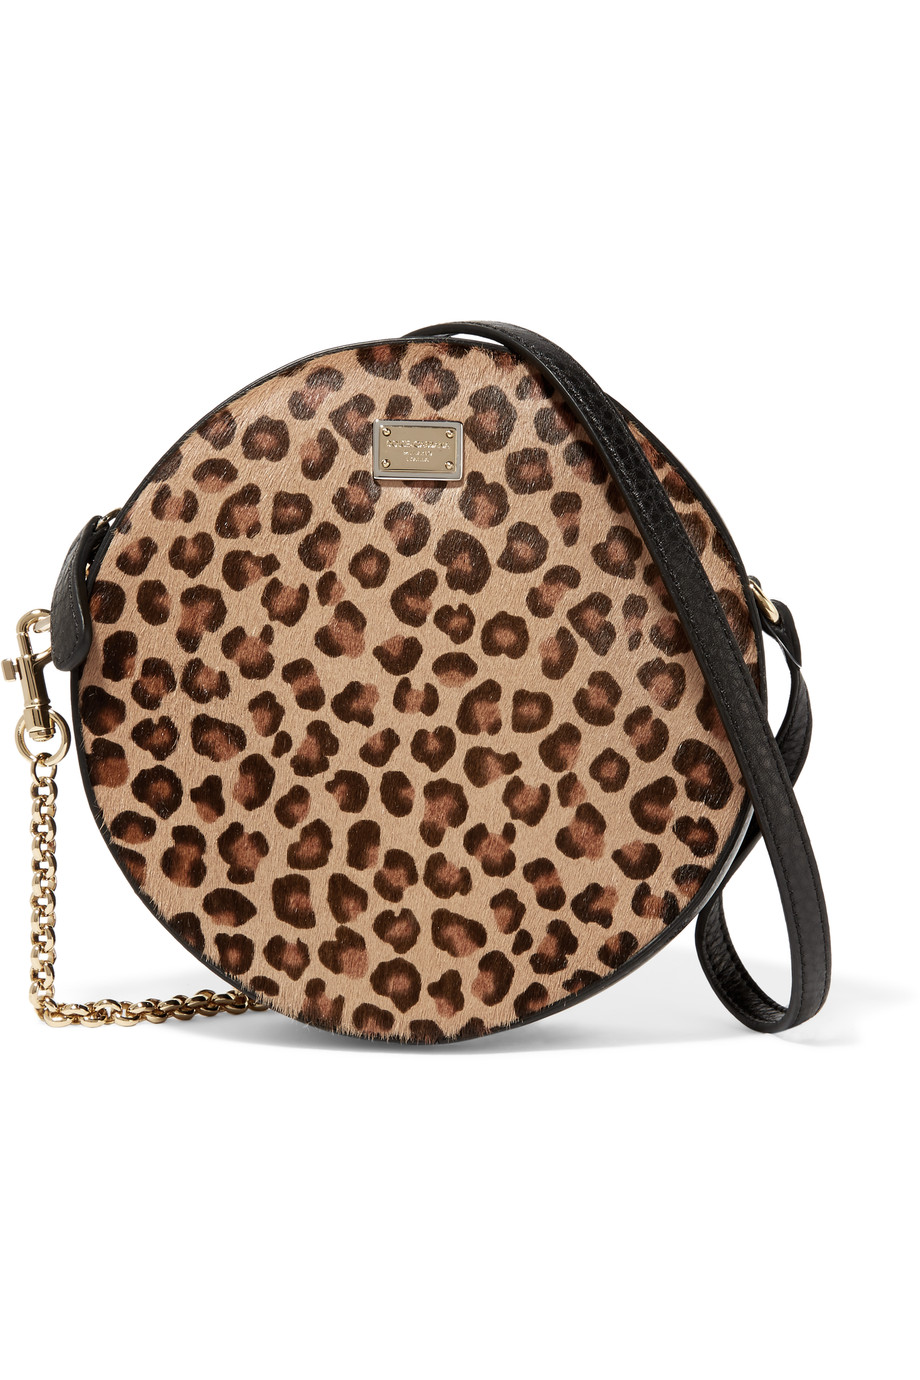 d&g leopard print bag